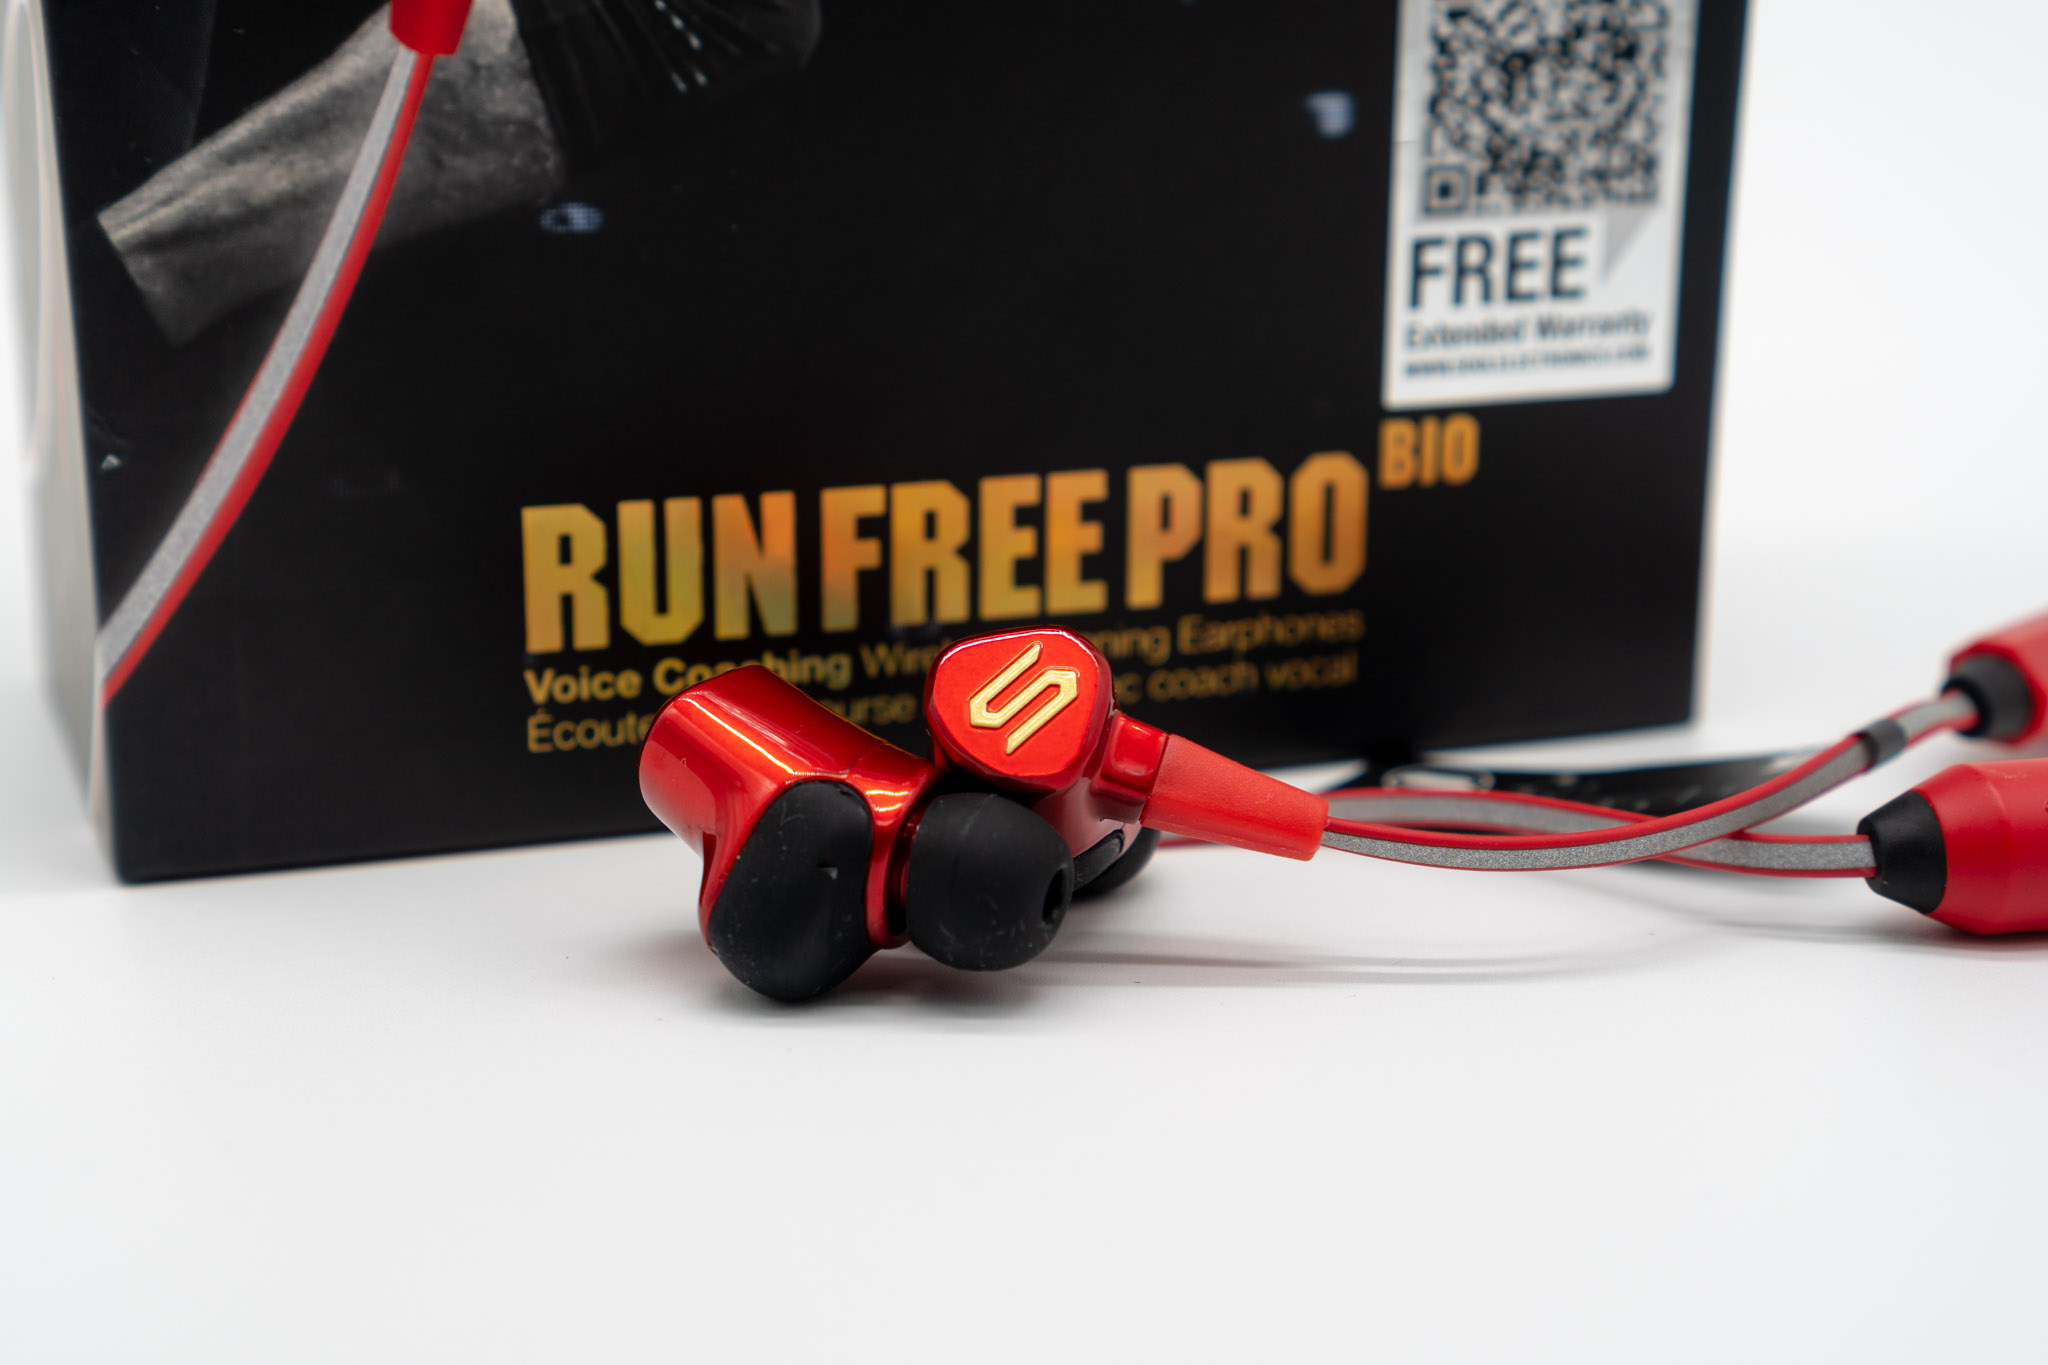 soul run free pro bio earphones